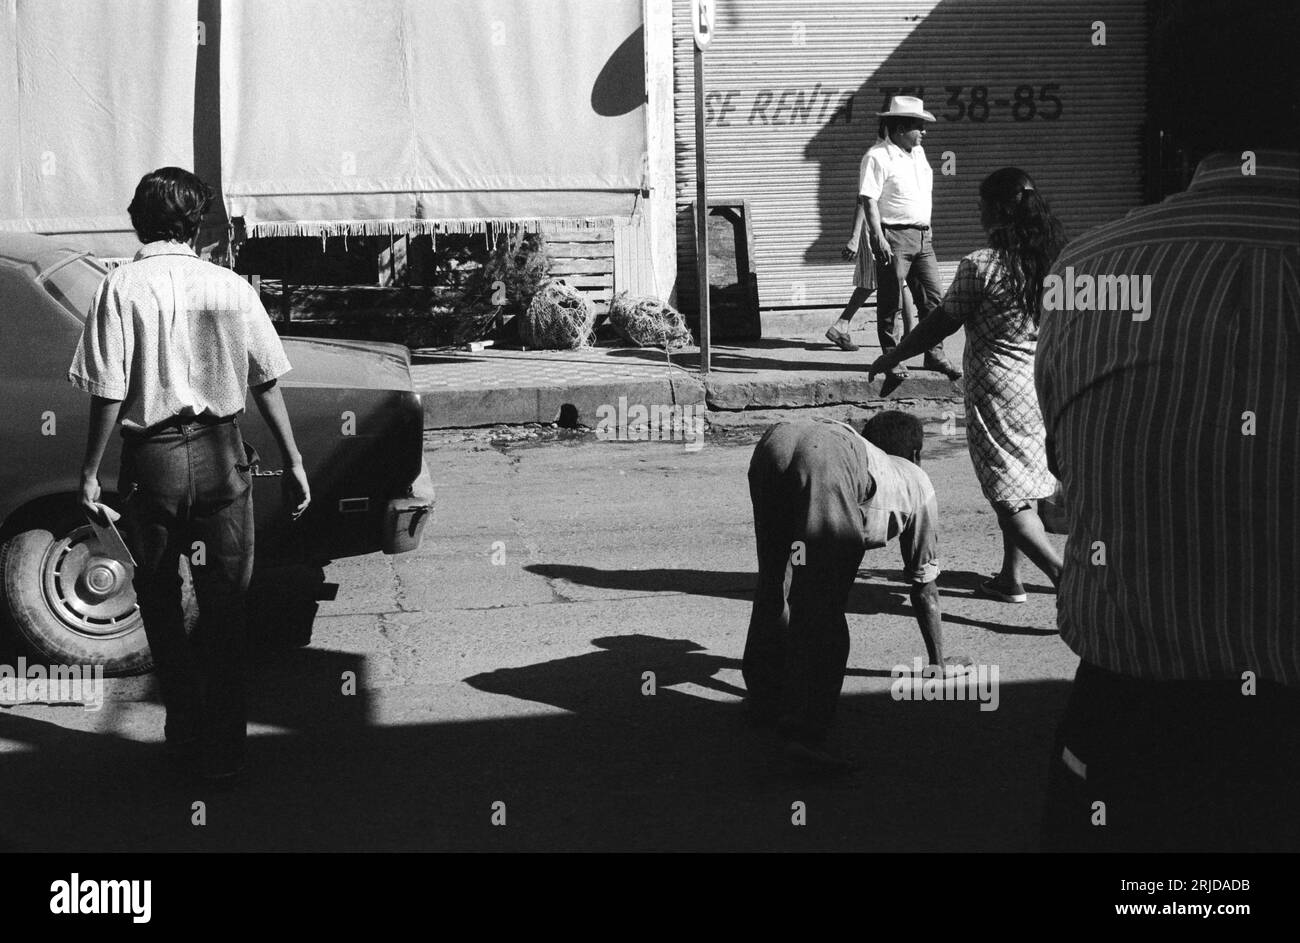 Mexiko 1970er Jahre Vierfach-Erwachsener-Mensch-Handlauf. Auch bekannt als Uner Tan Syndrom UTS. Mazatlan, Bundesstaat Sinaloa, Mexiko um Dezember 1972. HOMER SYKES Stockfoto